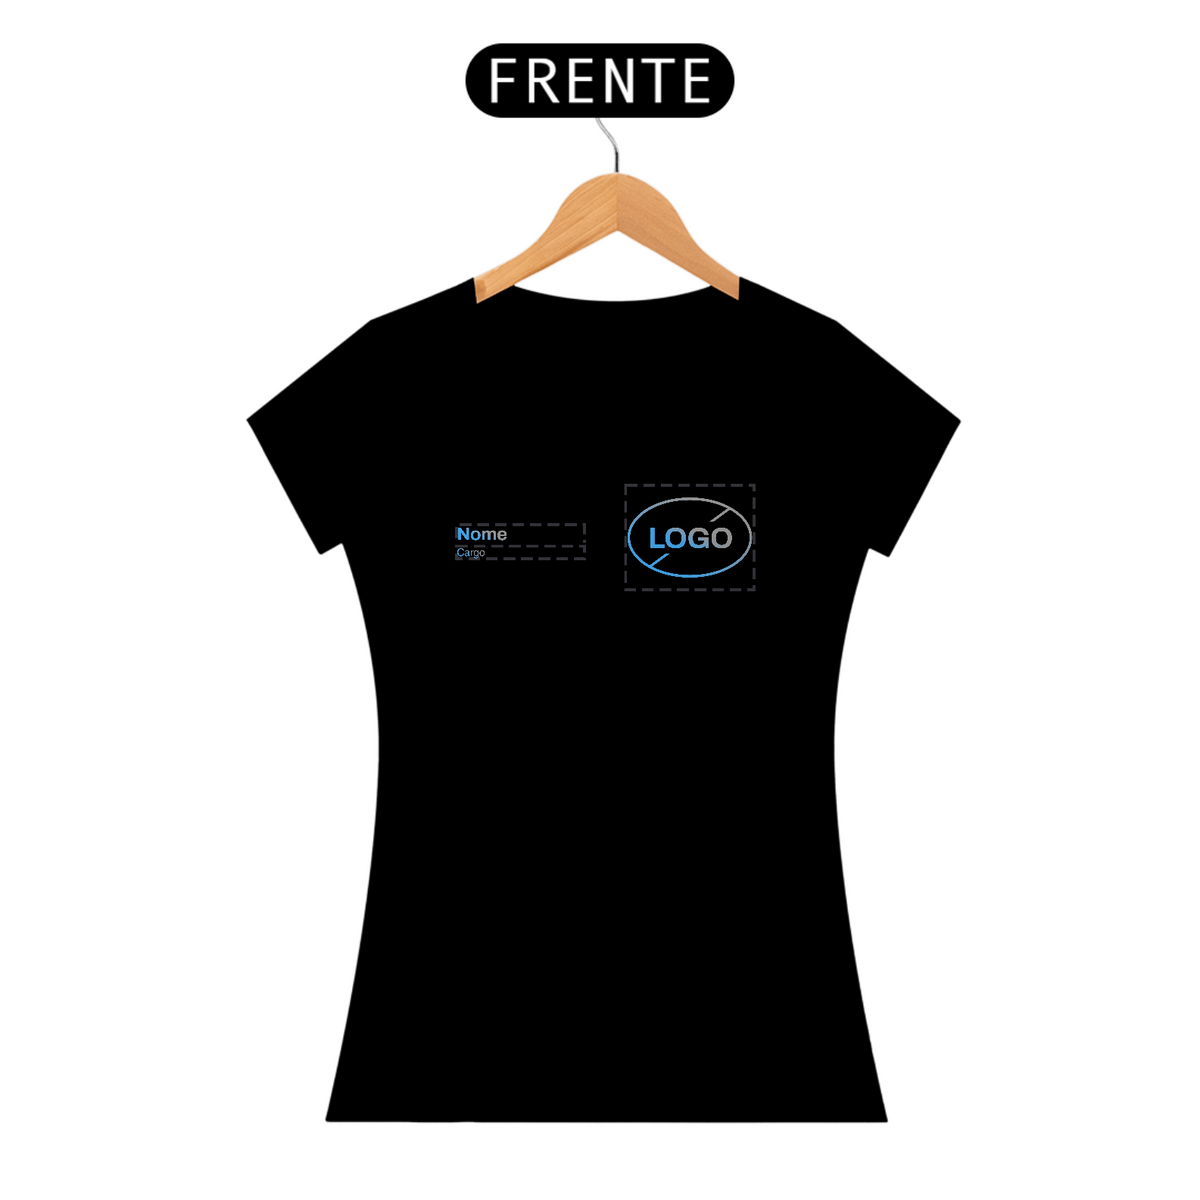 Nome do produto: T-Shirt Personalizável Fem. - Uniforme Nome + Logo + Cargo - FRENTE